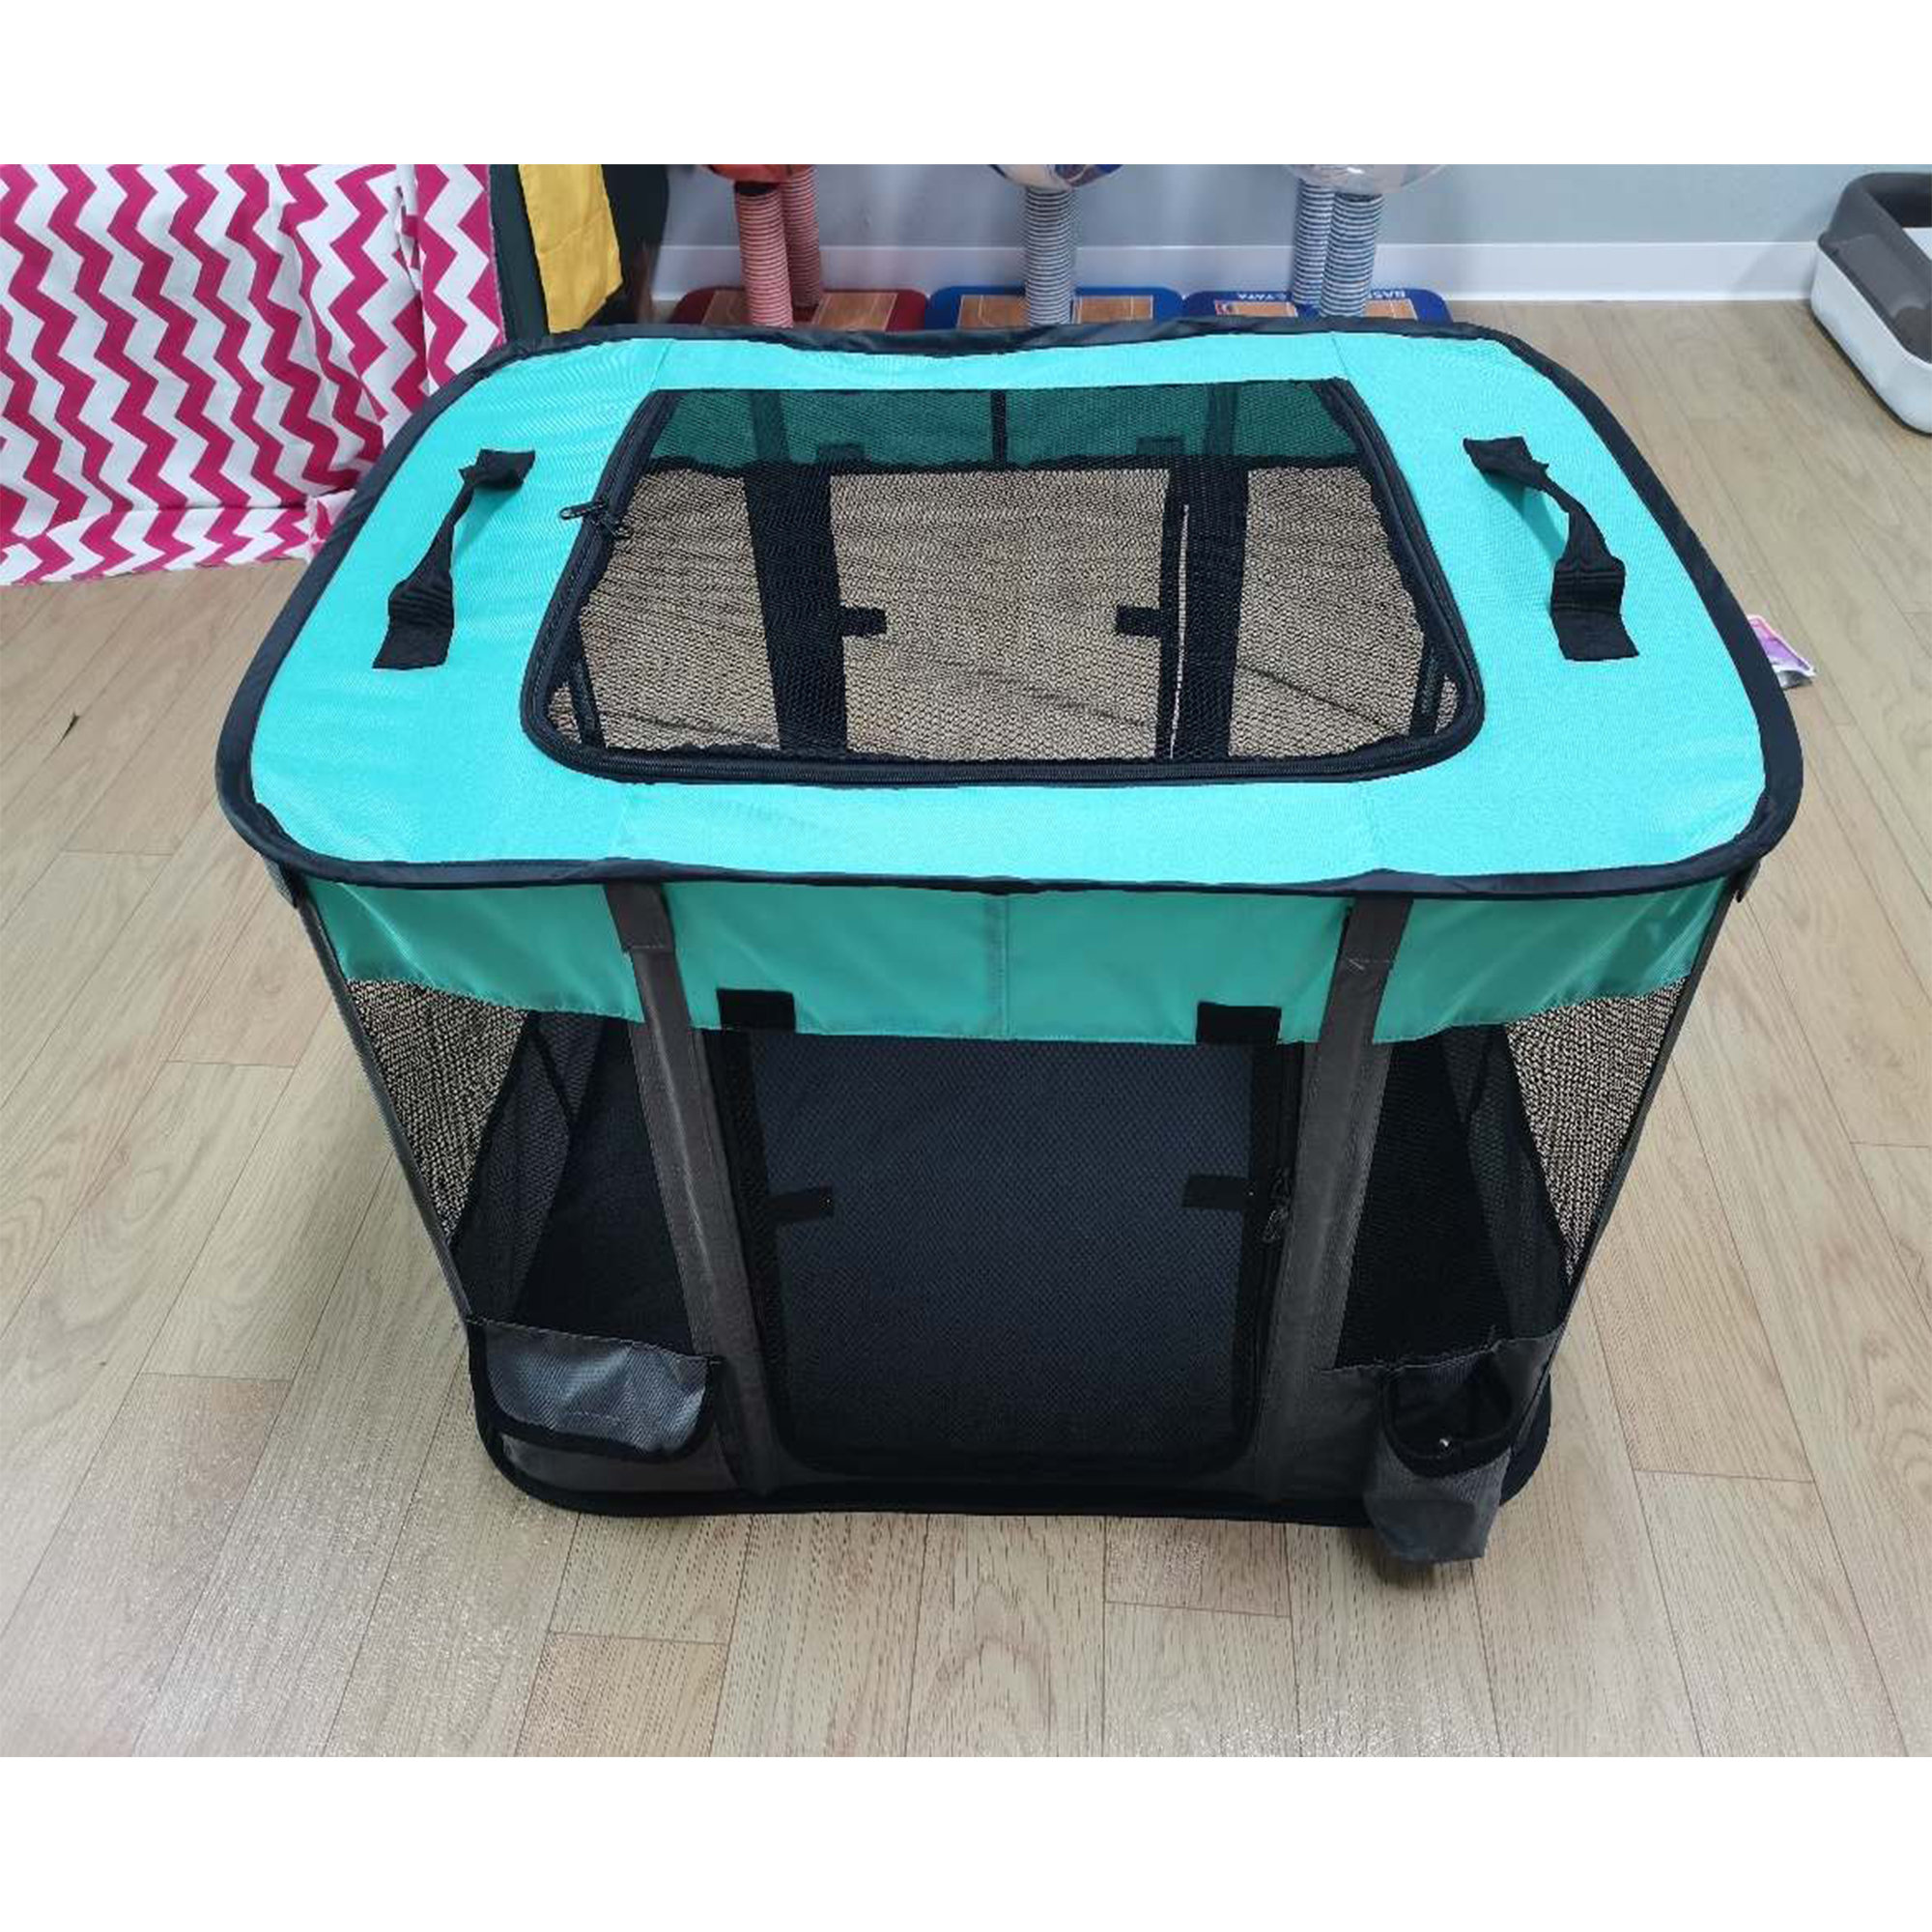 Veehoo Folding Soft 3-Door Pet Kennel Dog Crate, Pet Condos